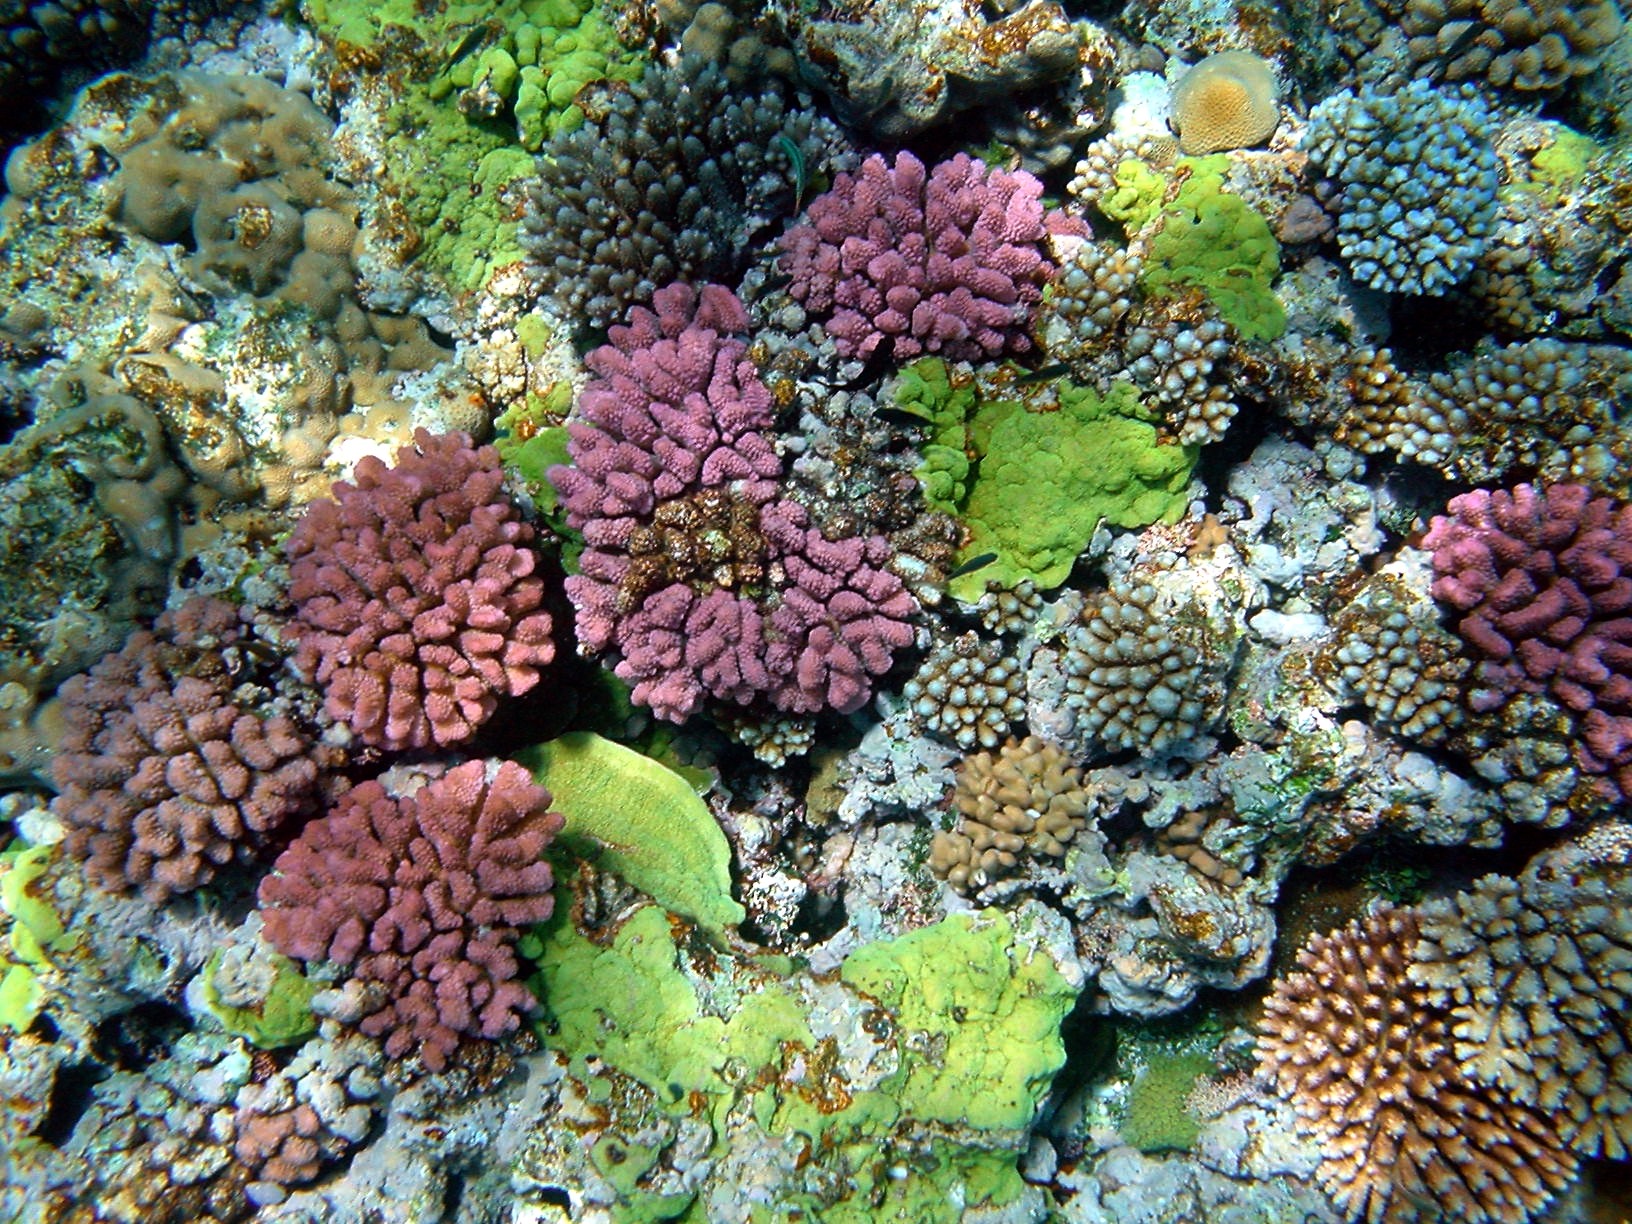 Corais da Austrália podem ter a chave para frear a transmissão do HIV (Foto: Wikimedia Commons)